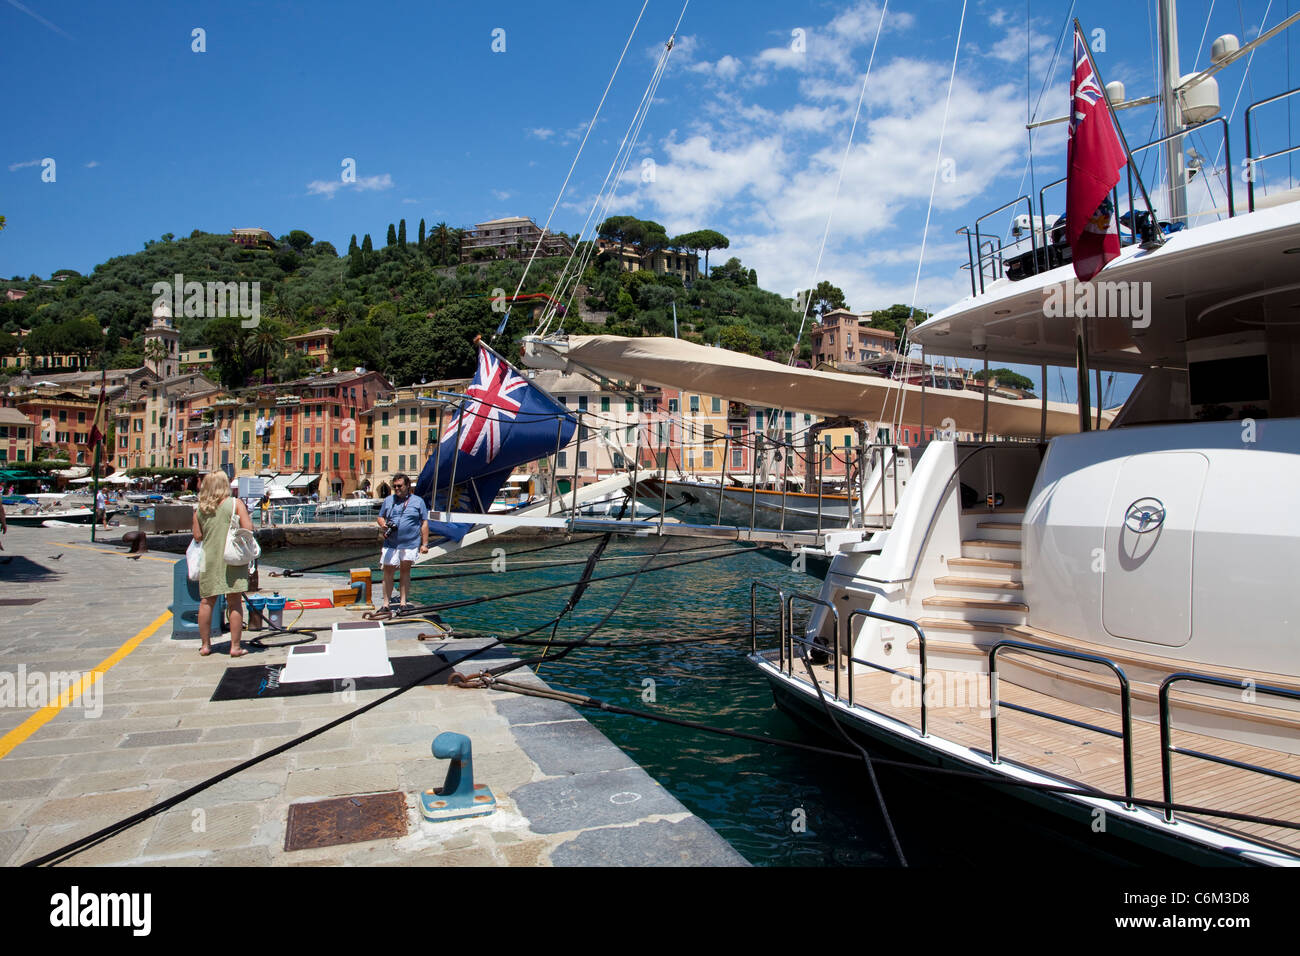 Luxus Yachten am Liegeplatz, malerischen Fischerdorf Portofino, Ligurien di Levante, Italien, Ligurisches Meer, Mittelmeer, Europa Stockfoto